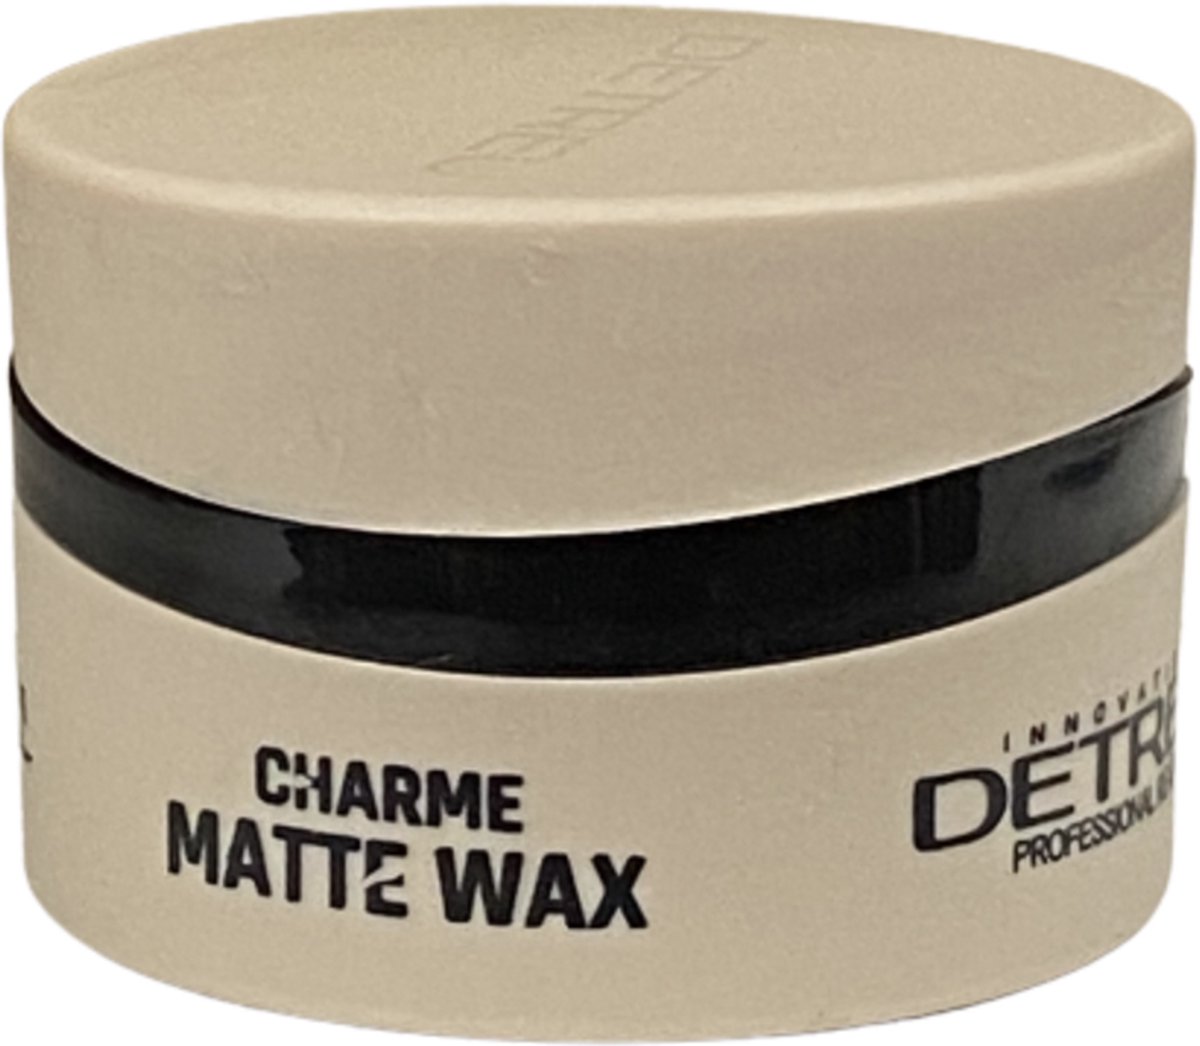 Detreu Charme Matte Wax 150 ML